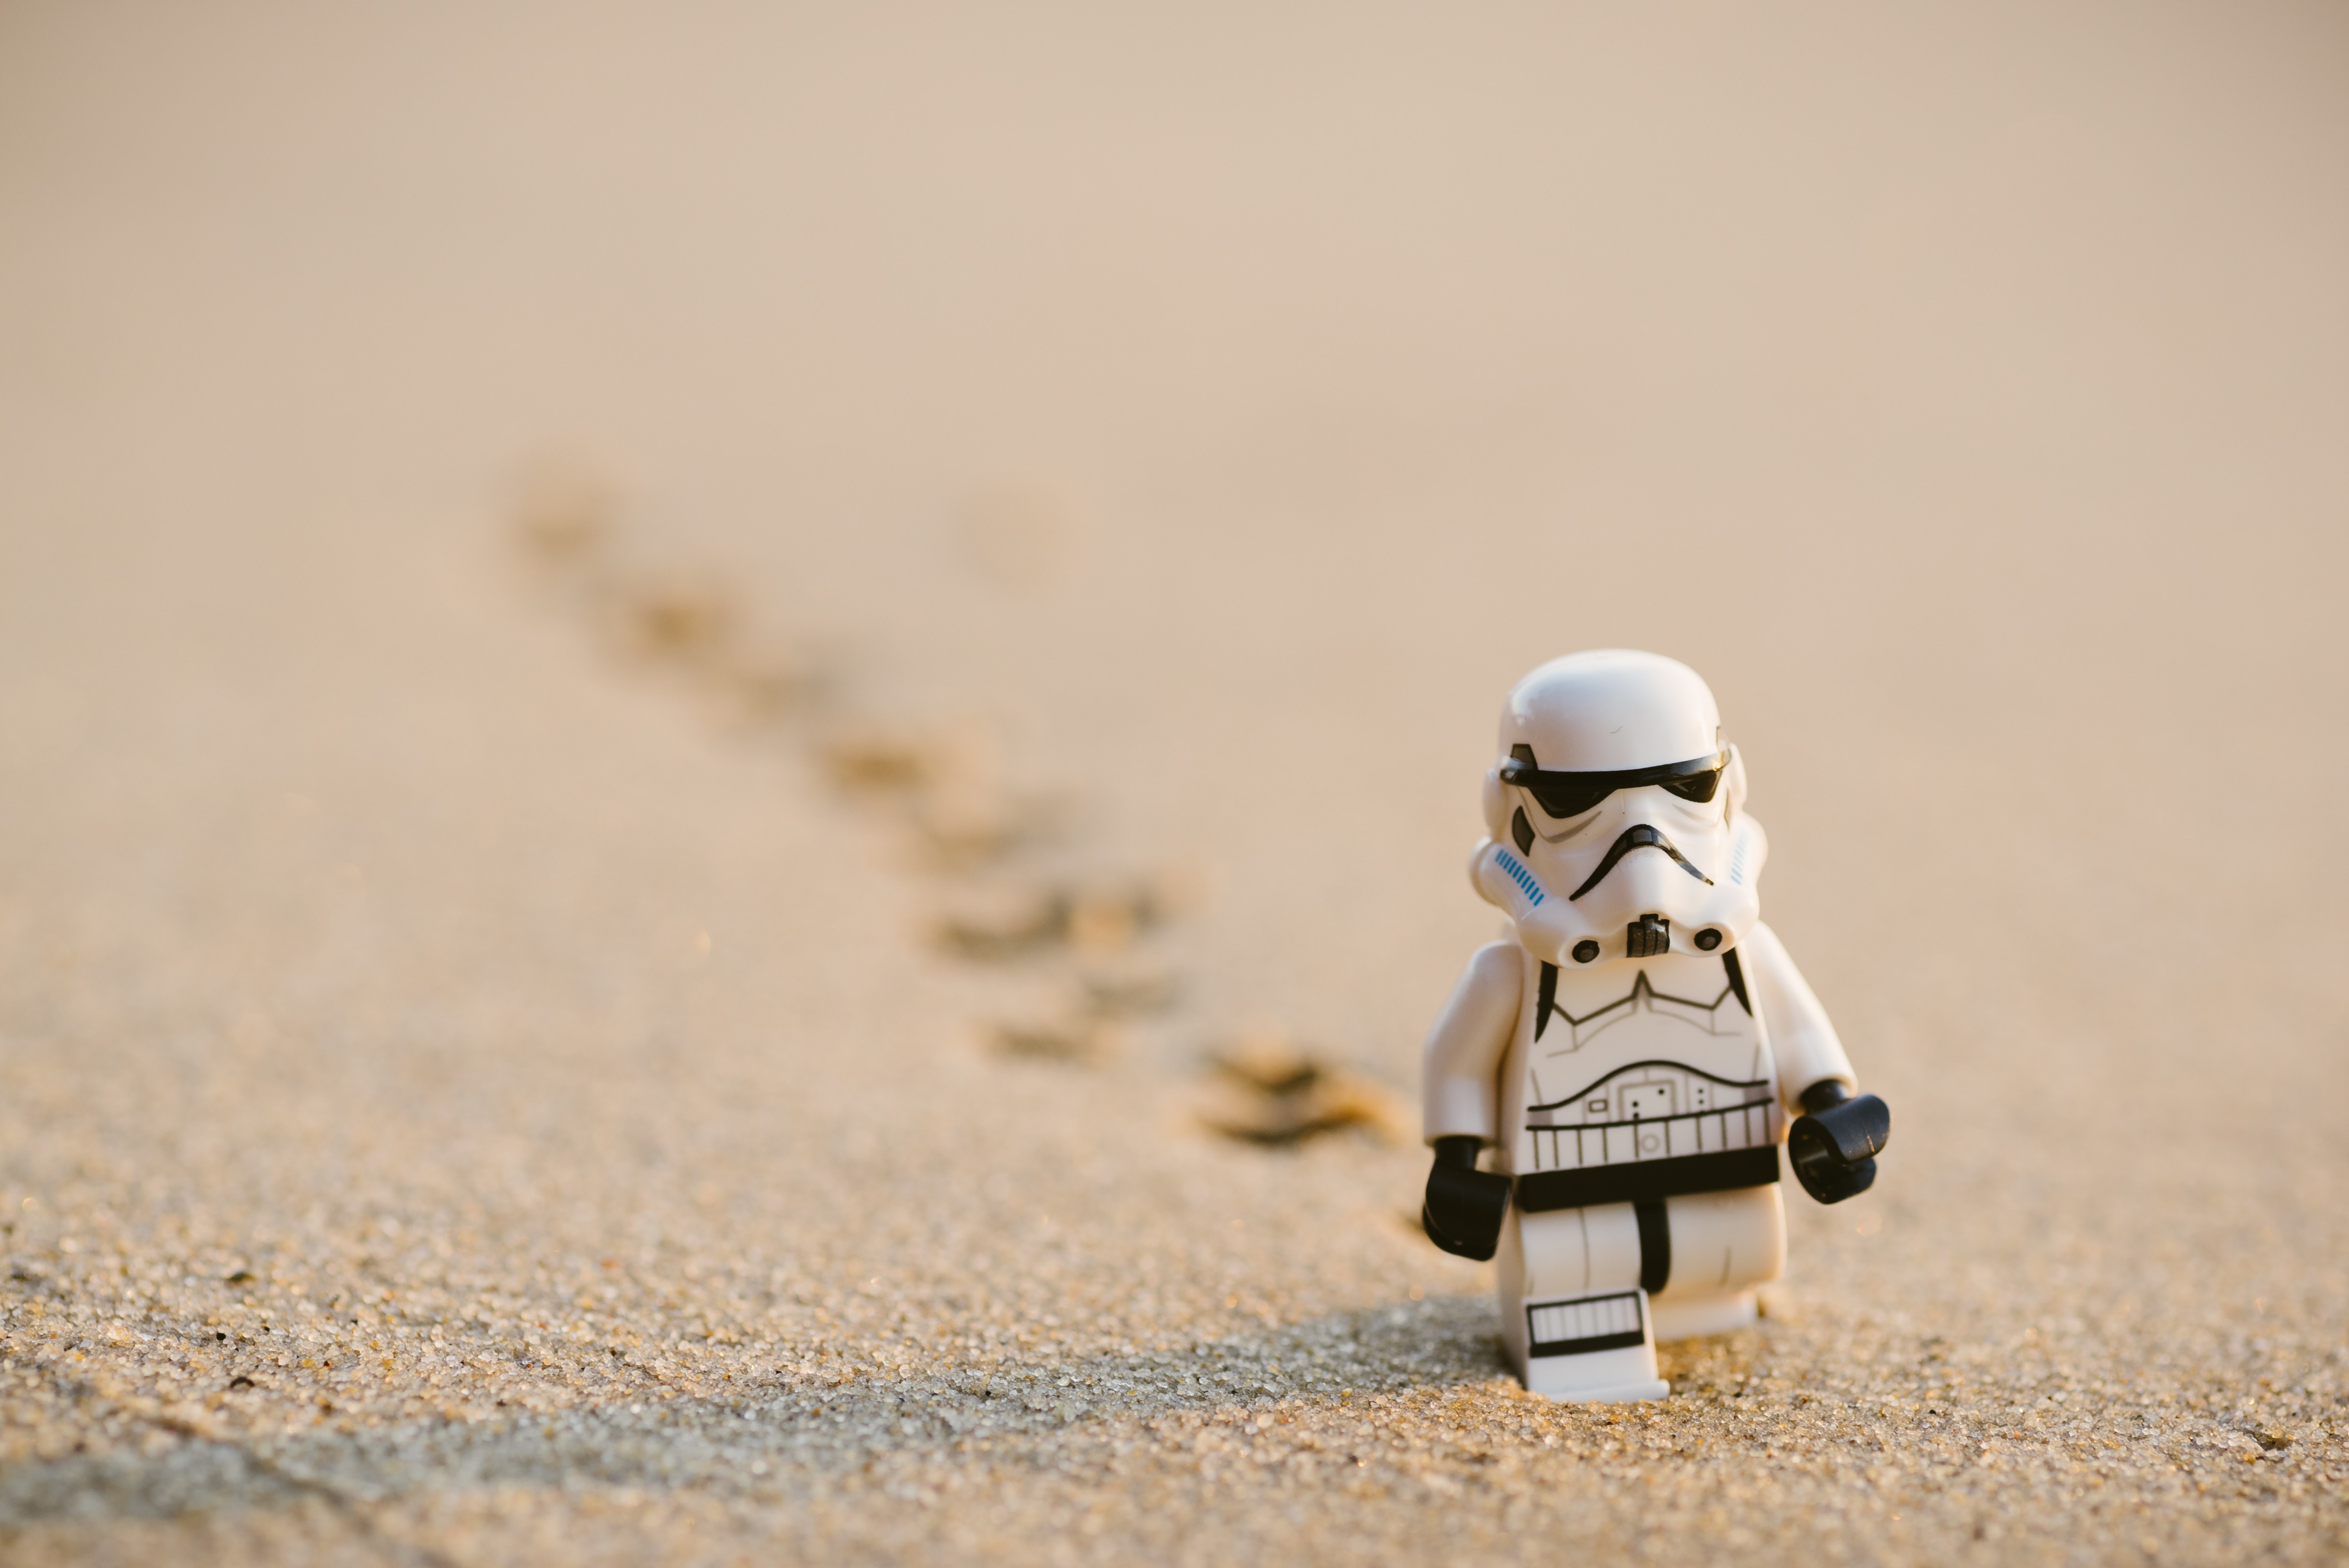 Star Wars storm trooper